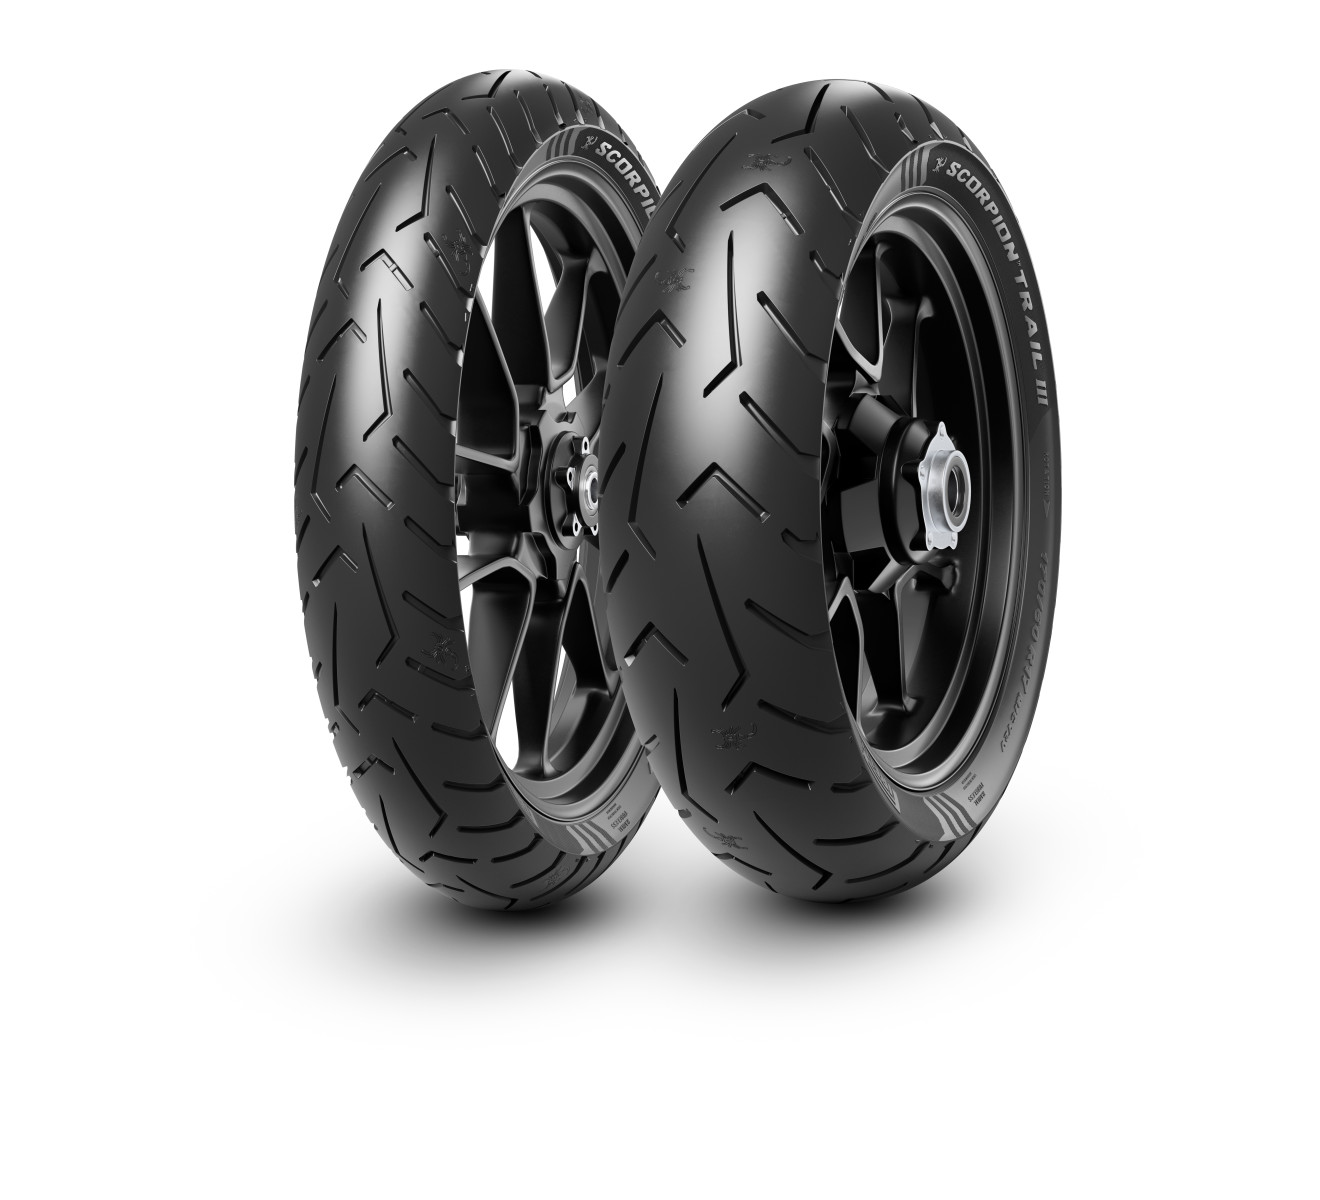 Gomme Nuove Pirelli 140/80 R17 69V SCORPION TRAIL III pneumatici nuovi Estivo